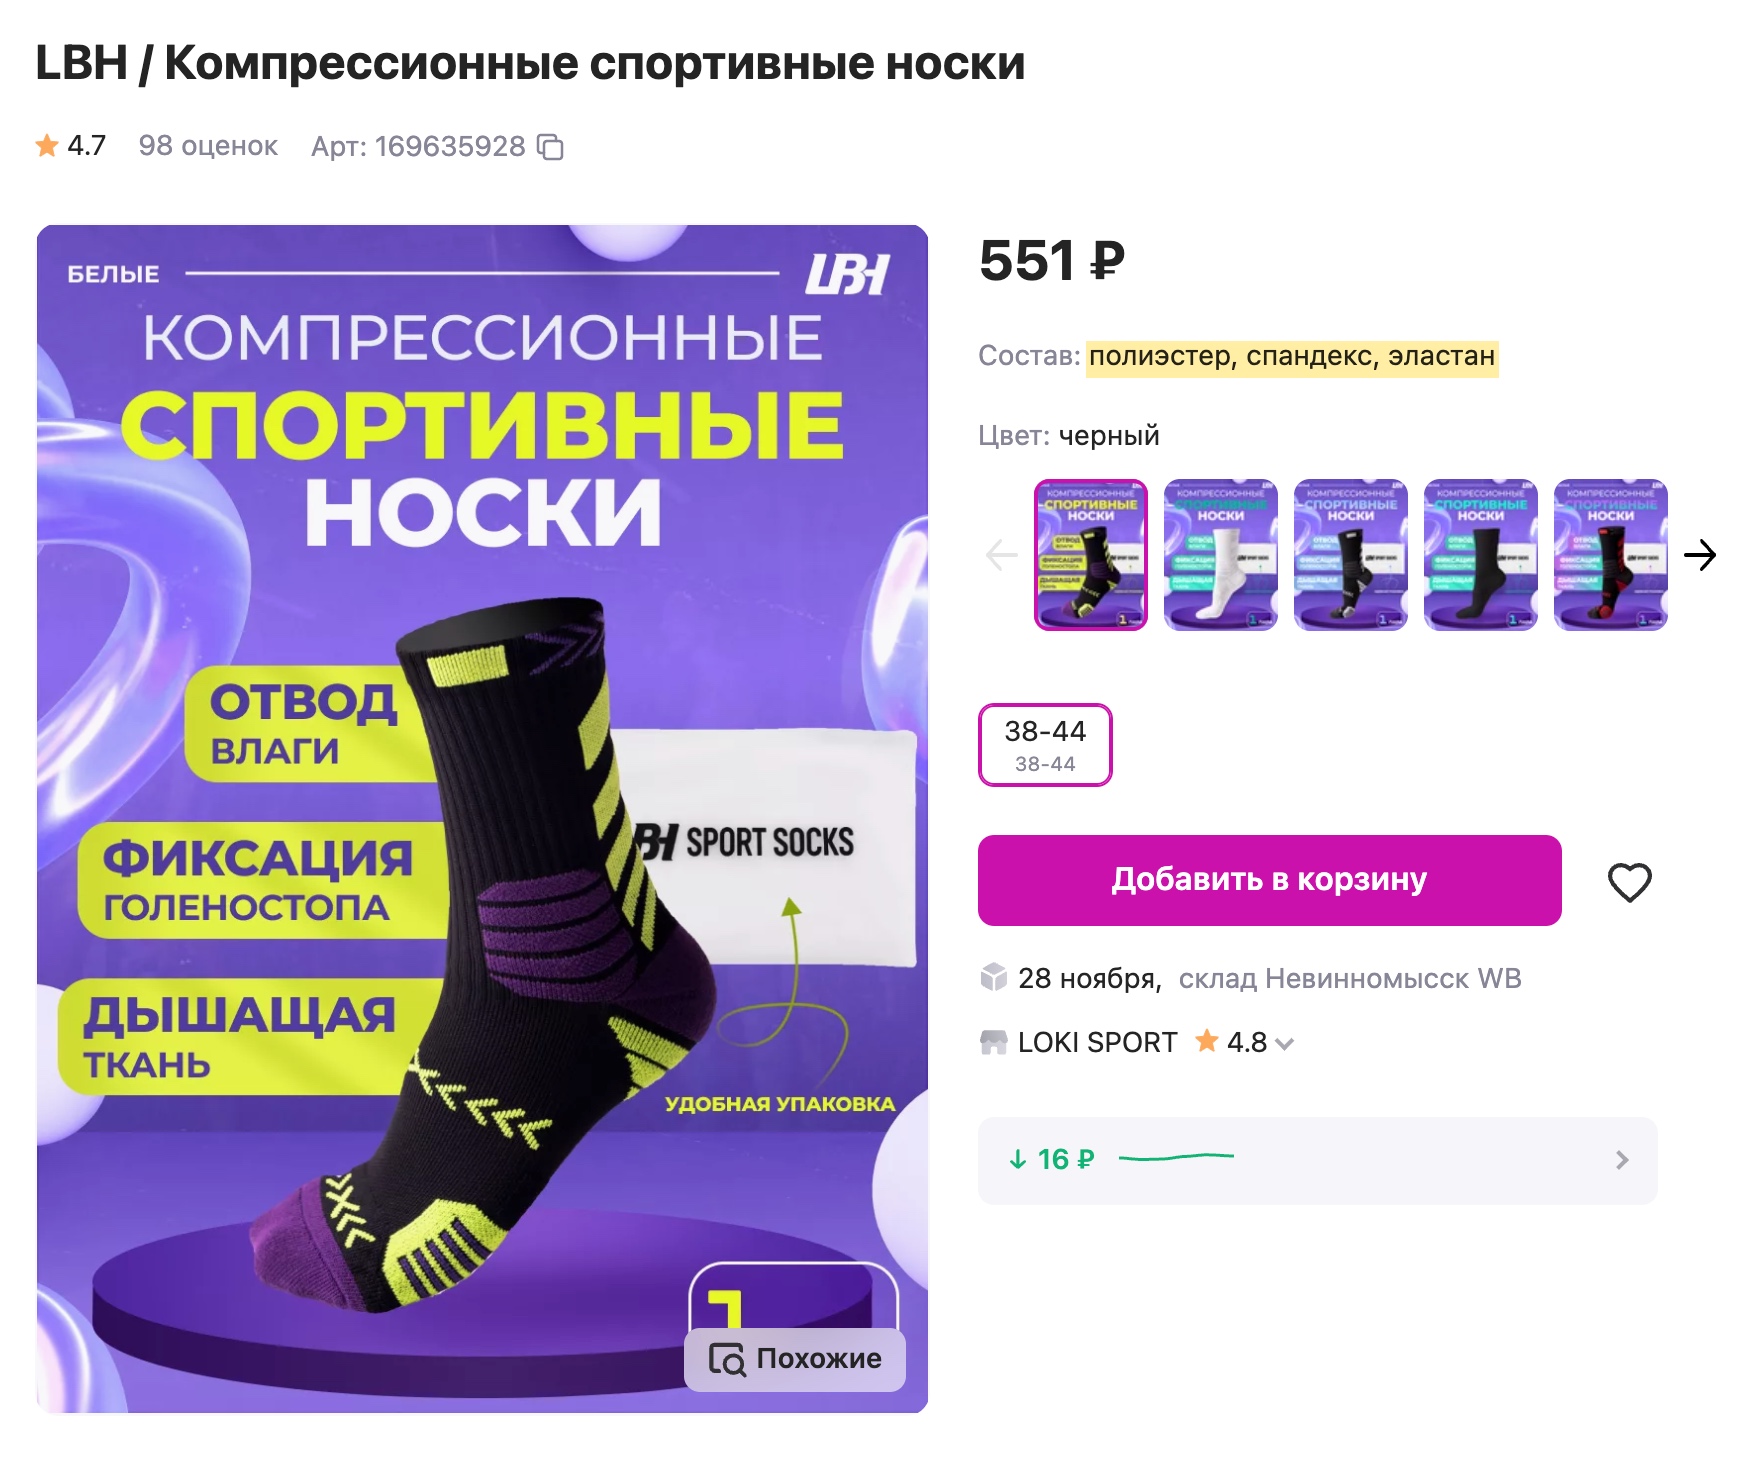 Спортивные носки зачастую состоят только или преимущественно из синтетических волокон. Источник: wildberries.ru